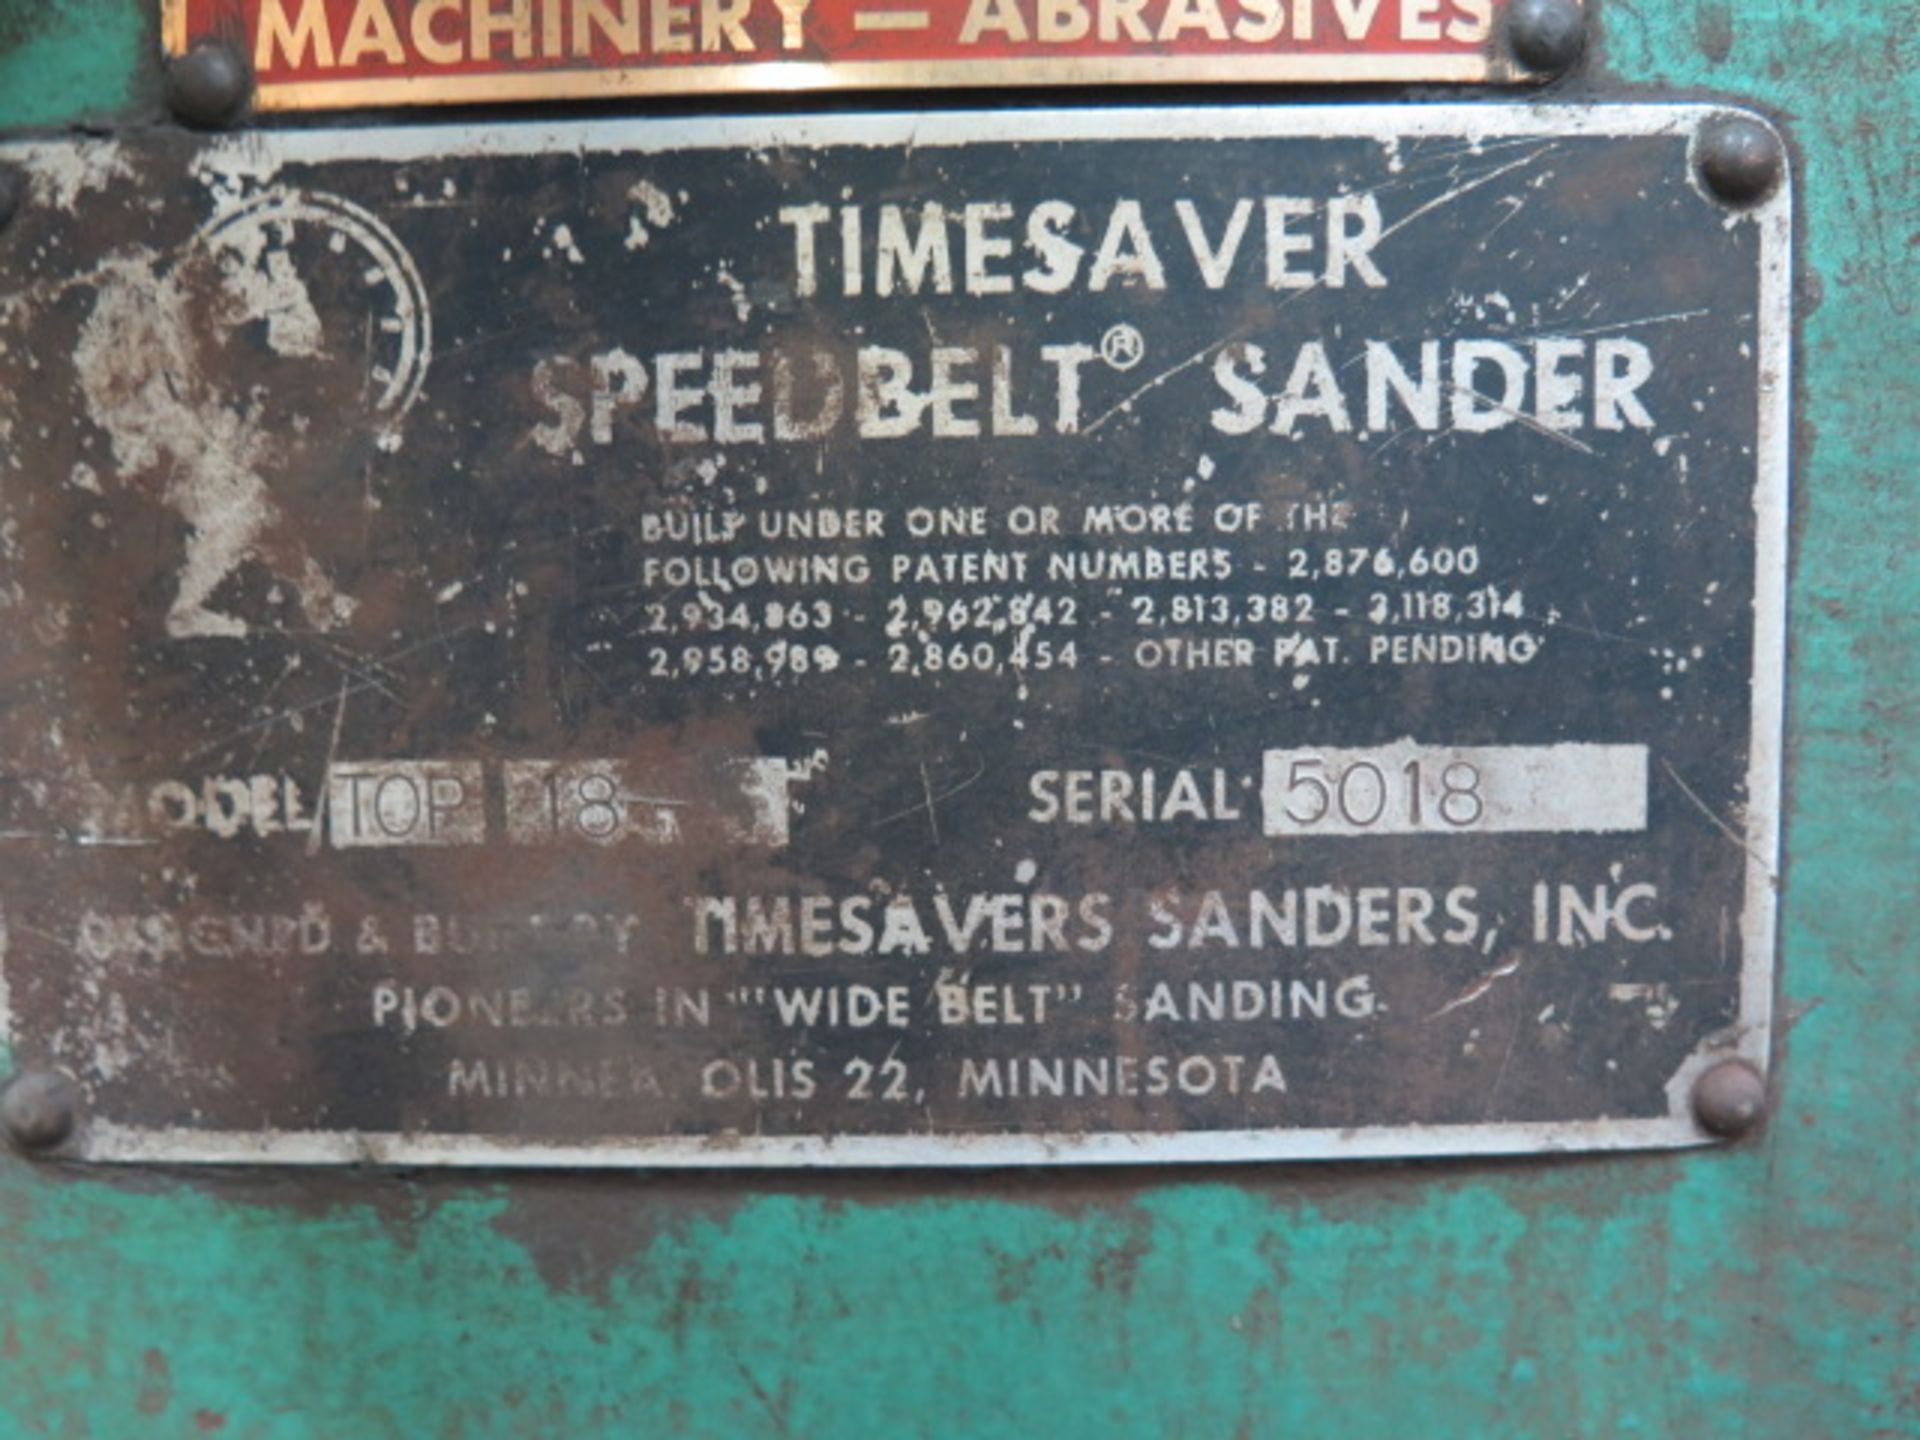 Timesavers TOP-18 18” “Speedbelt” Sander s/n 5018 w/ 18” Belt Feed (SOLD AS-IS - NO WARRANTY) - Image 8 of 8